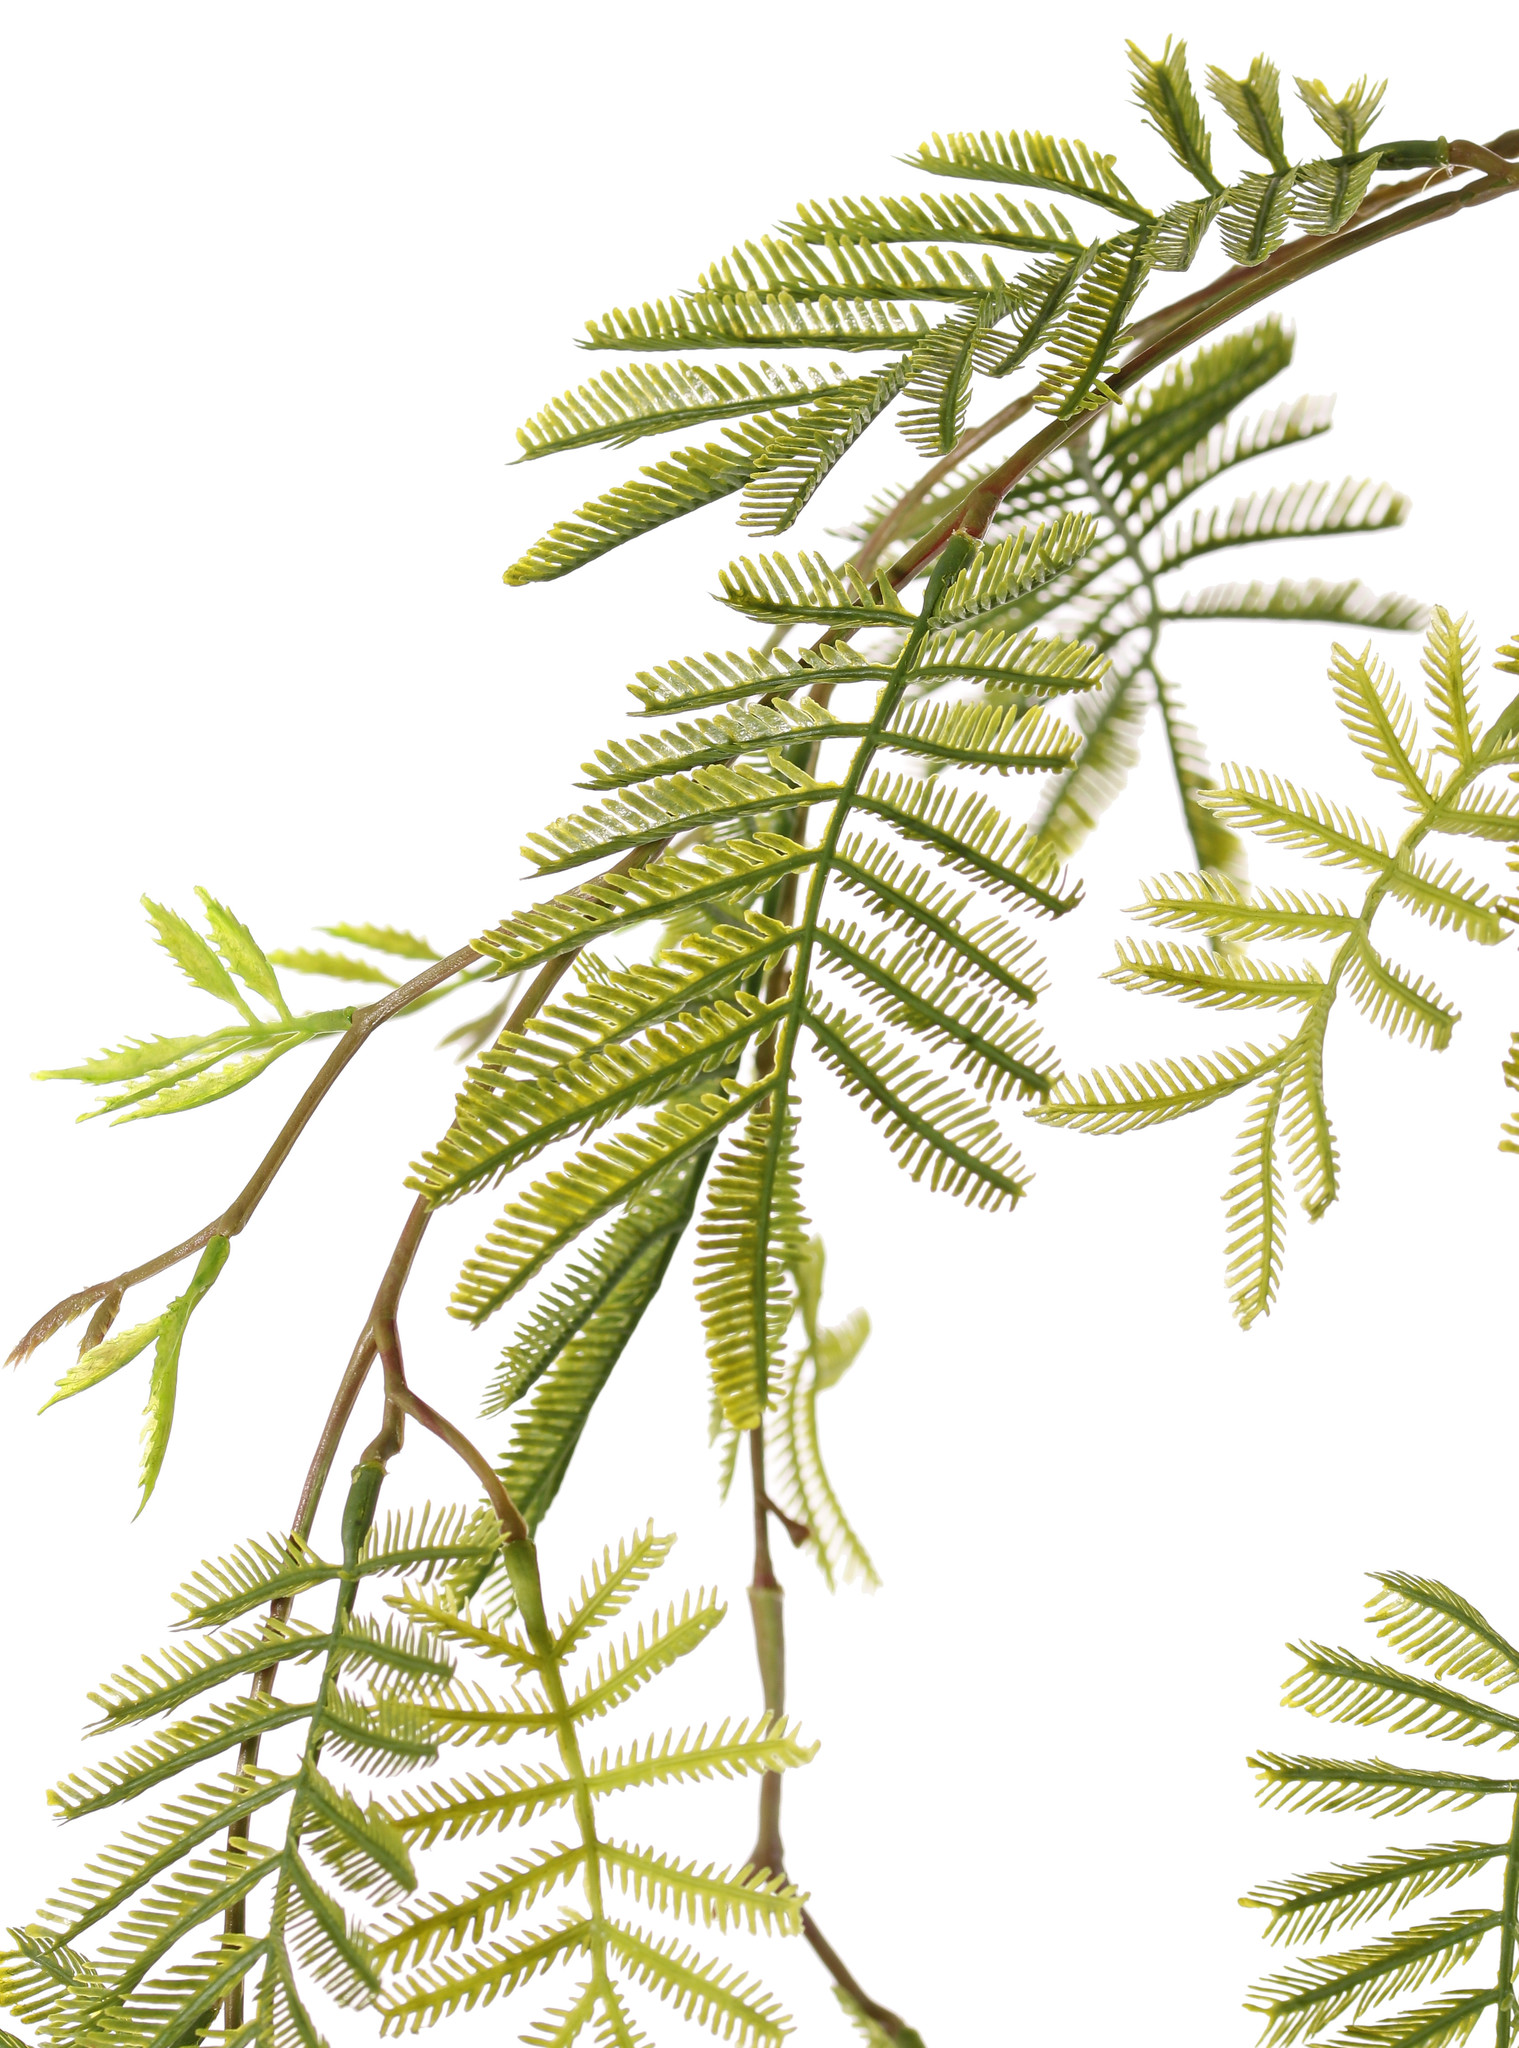 Mimosa branch (Acacia dealbata), 29 leaves, 110 cm